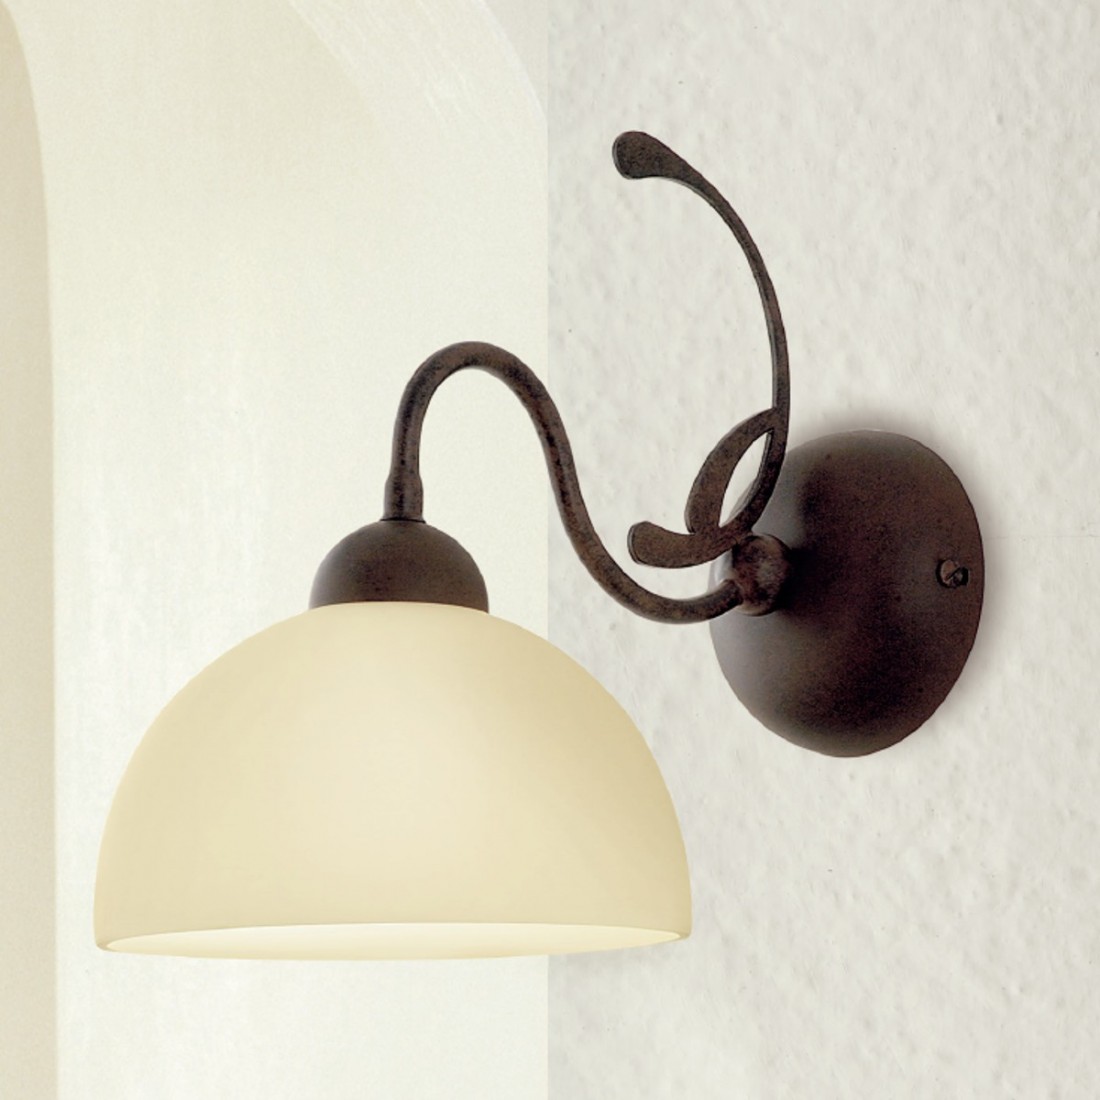 Applique LM-1910 E27 LED classica rustica lampada parete metallo vetro interno